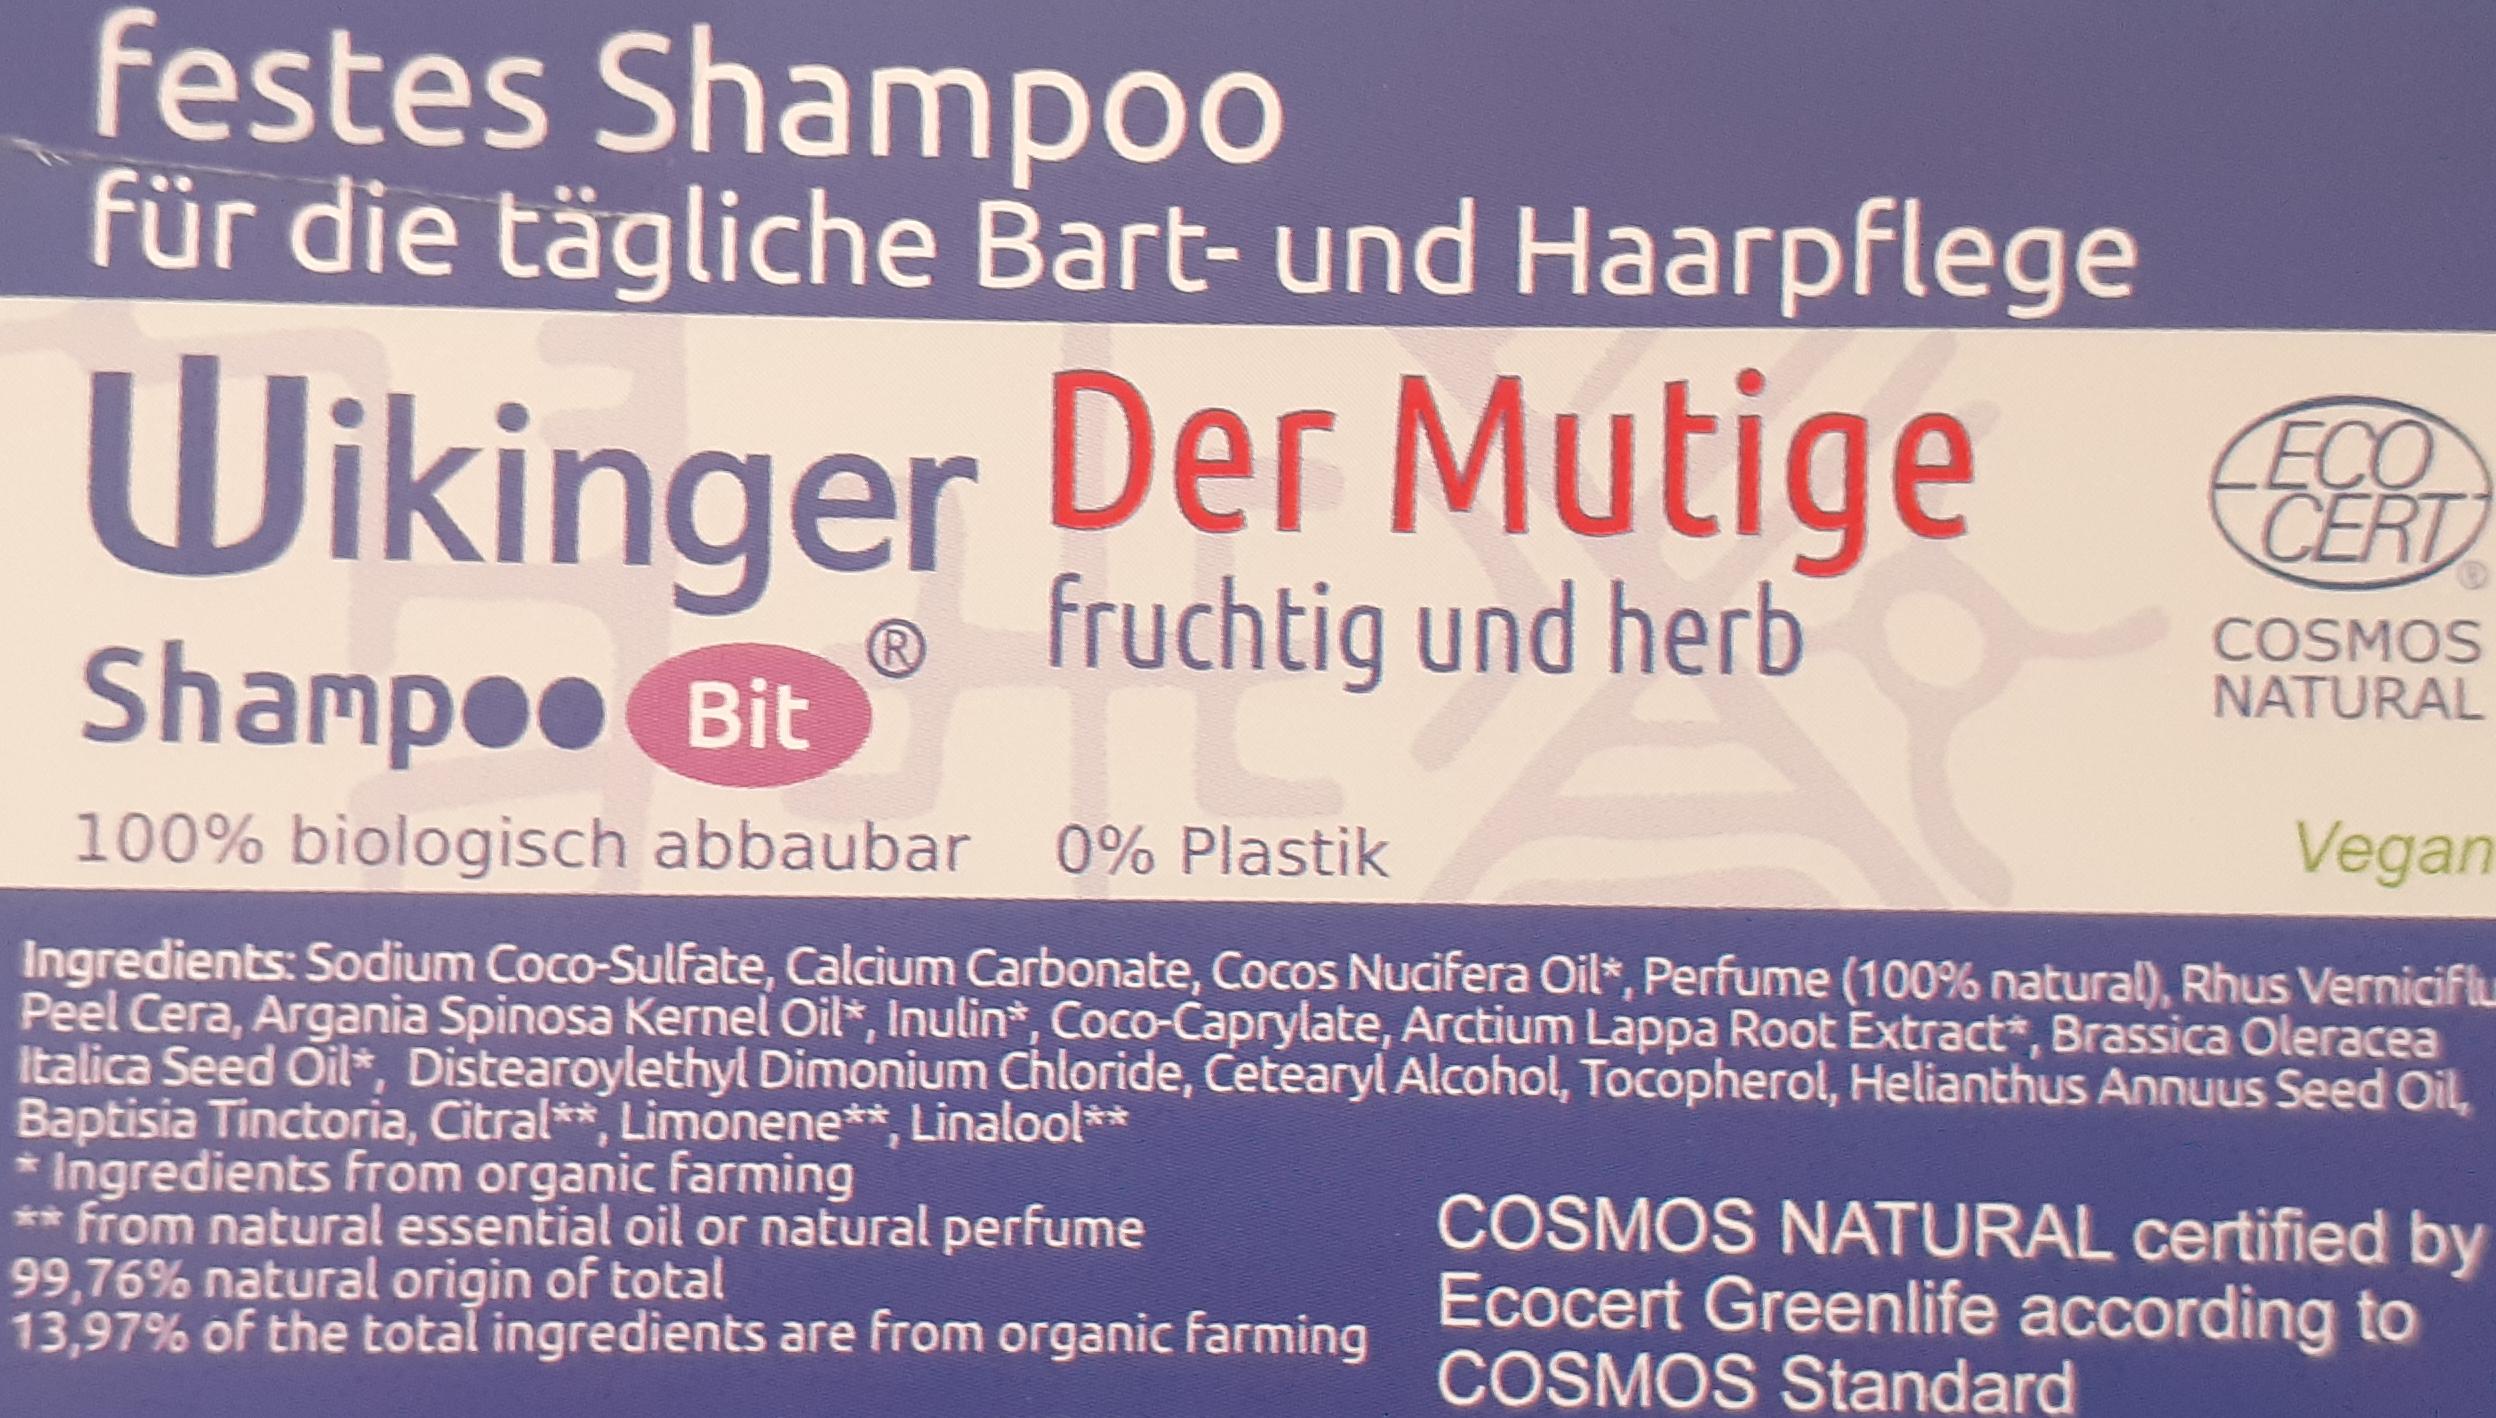 Wikinger Shampoo Bit von Rosenrot für die tägliche Bart- und Haarpflege, Der Mutige